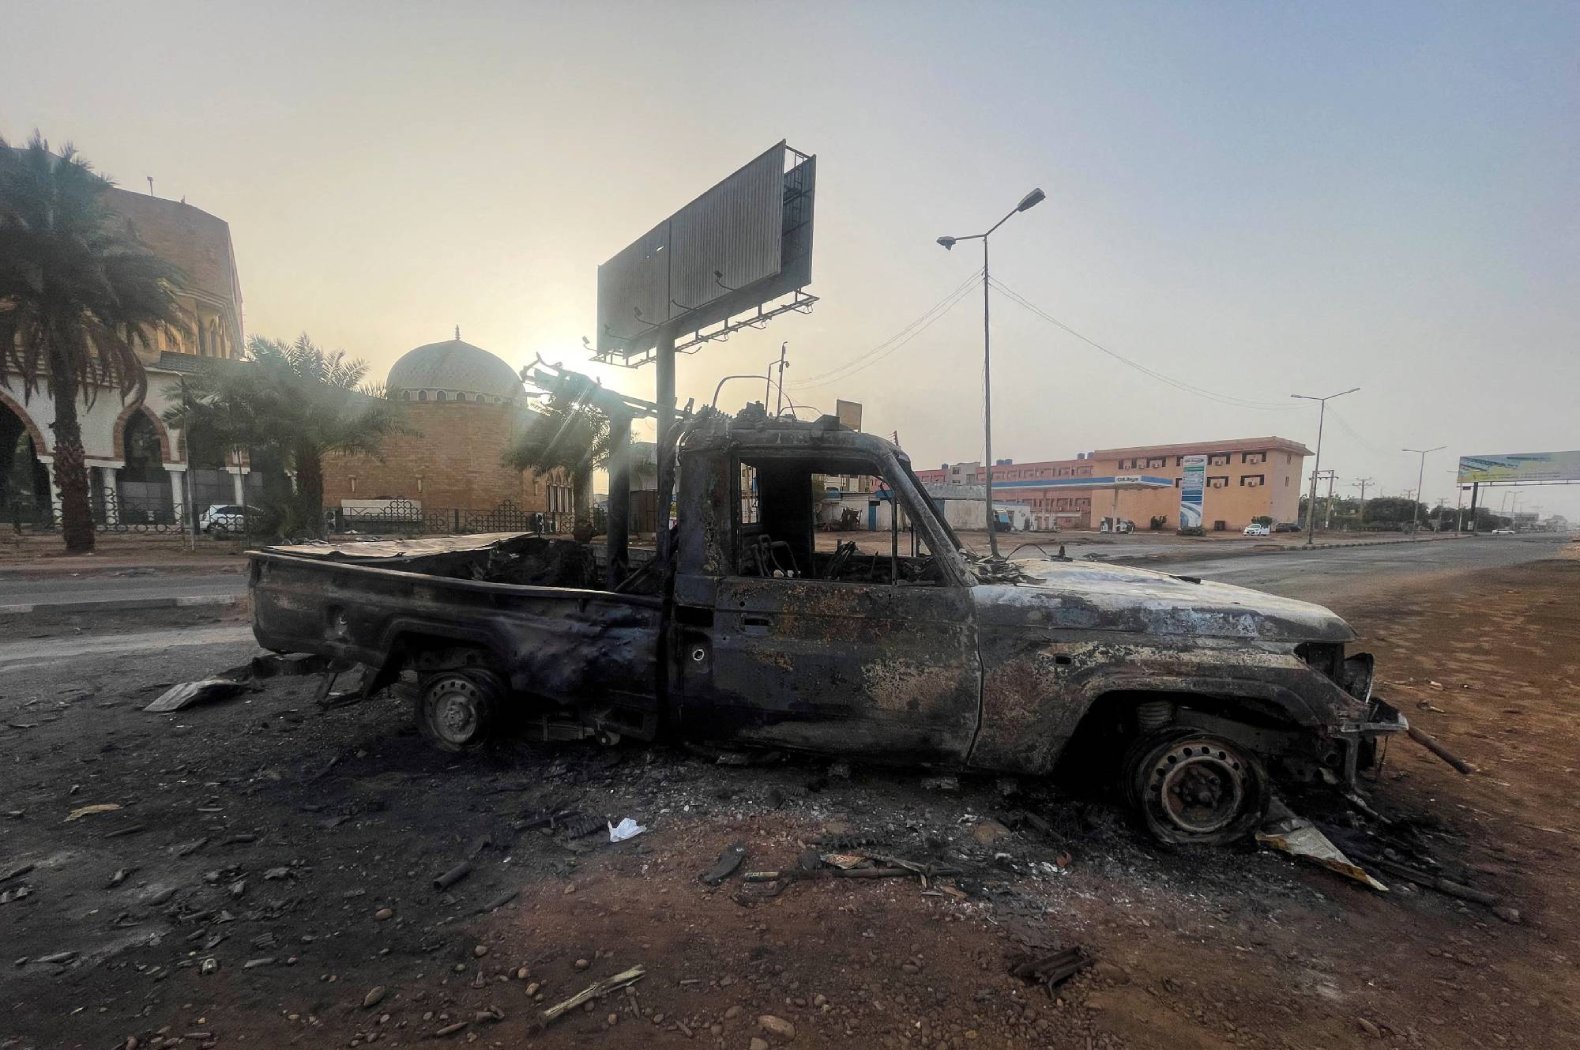 سيارة محترقة بالعاصمة السودانية الخرطوم (وكالات)